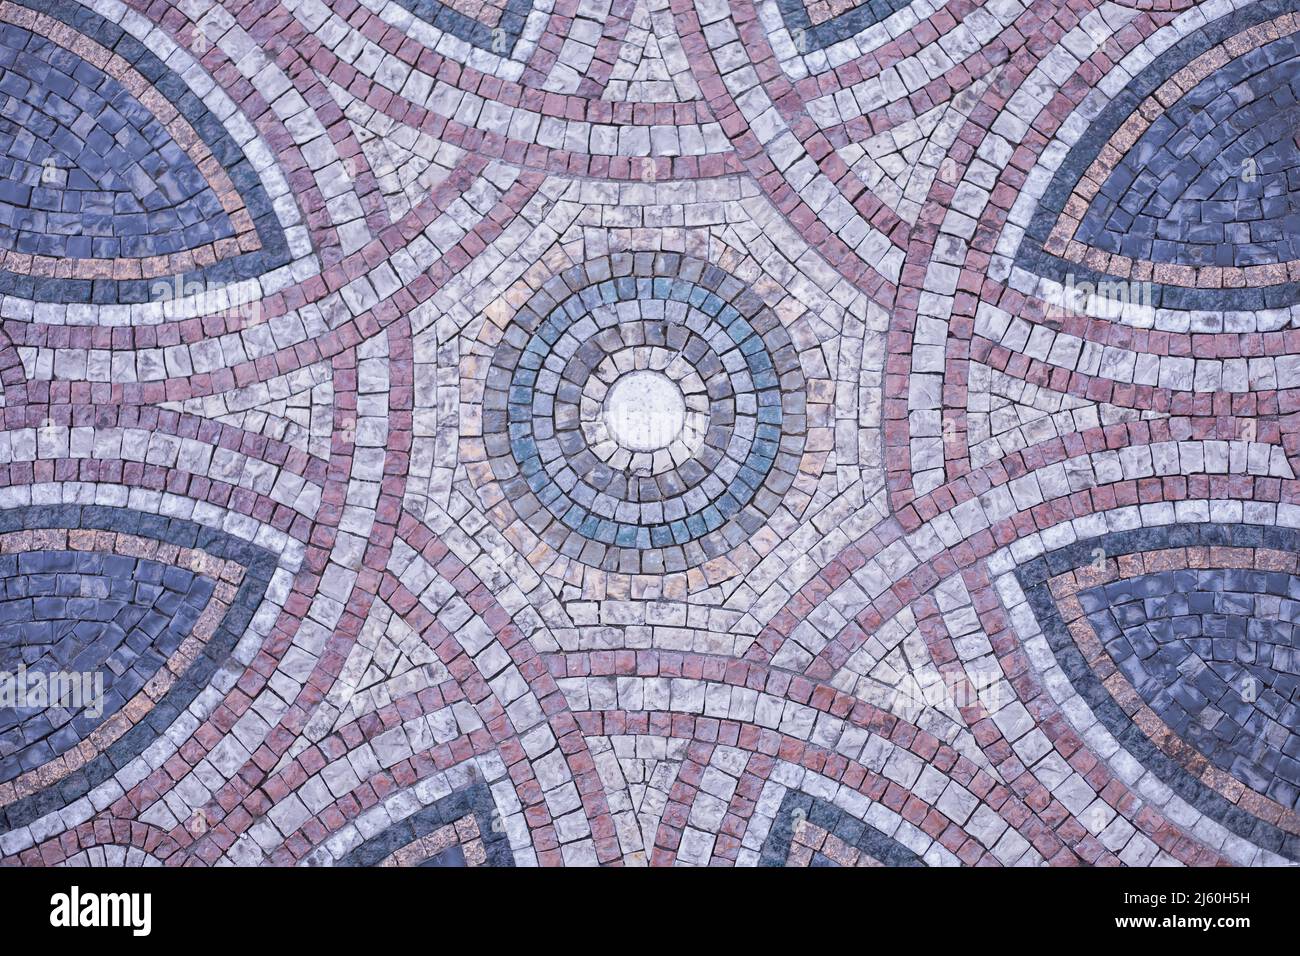 Mosaico de fondo compuesto de muchas pequeñas baldosas de colores en forma geométrica Foto de stock